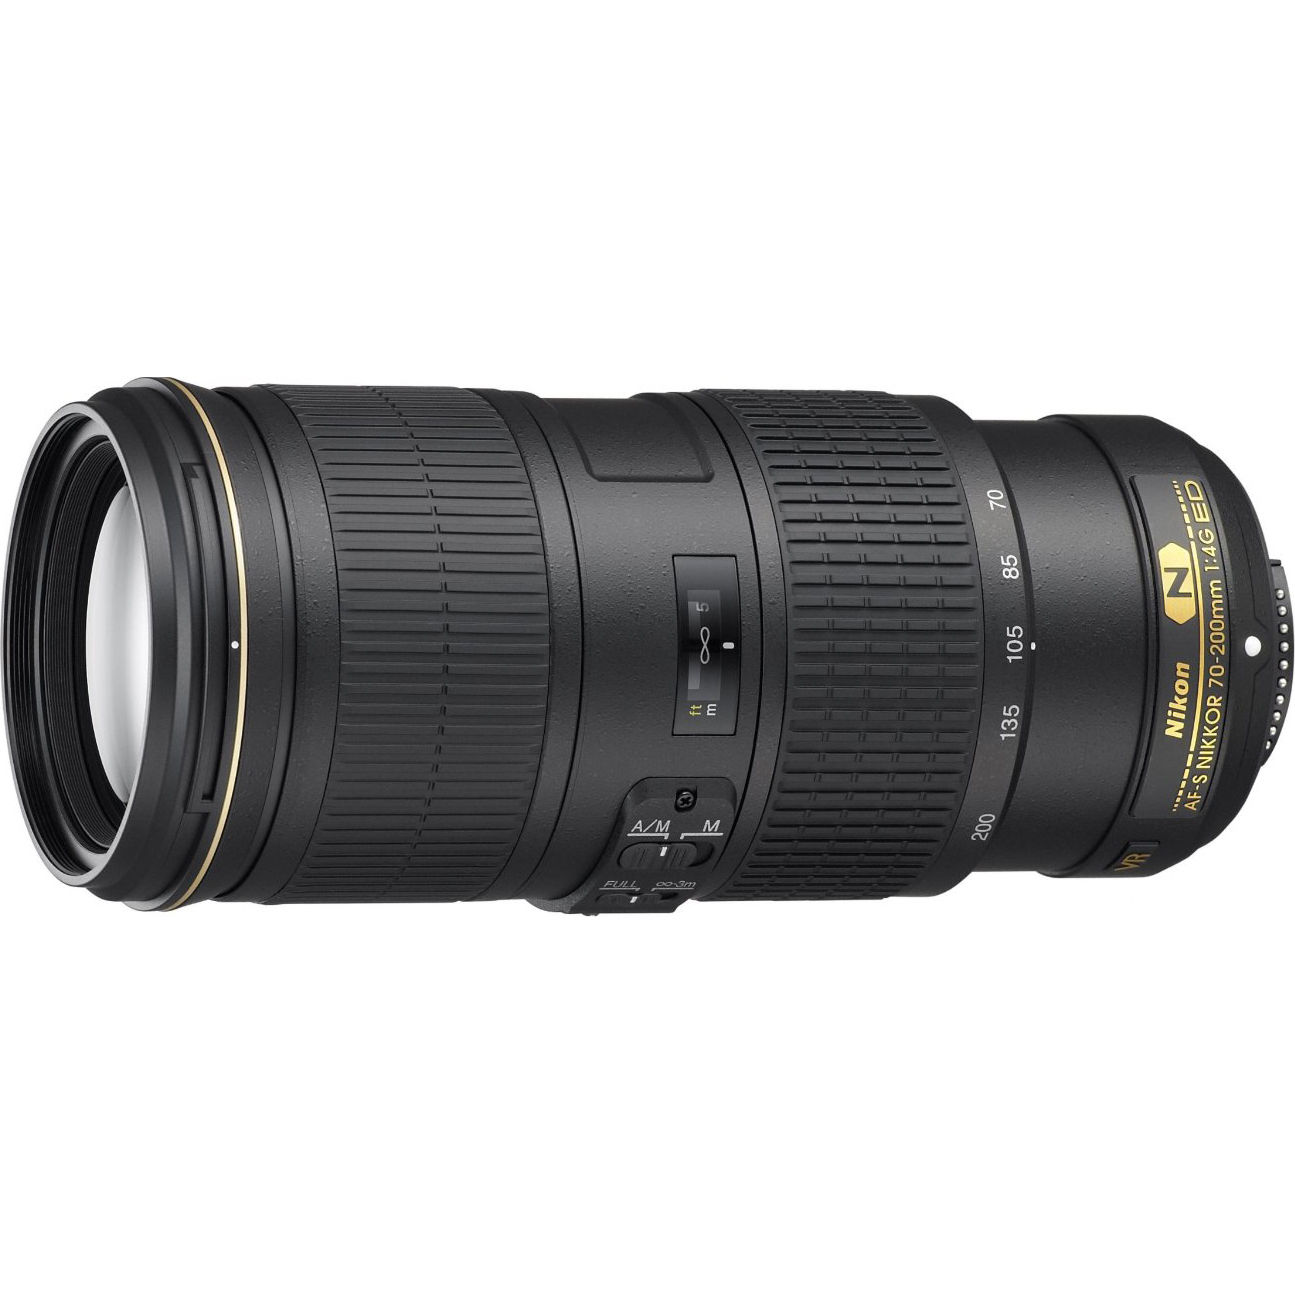 Hot Deal – Refurbished AF-S NIKKOR 70-200mm f/4G ED VR Lens for $998 !